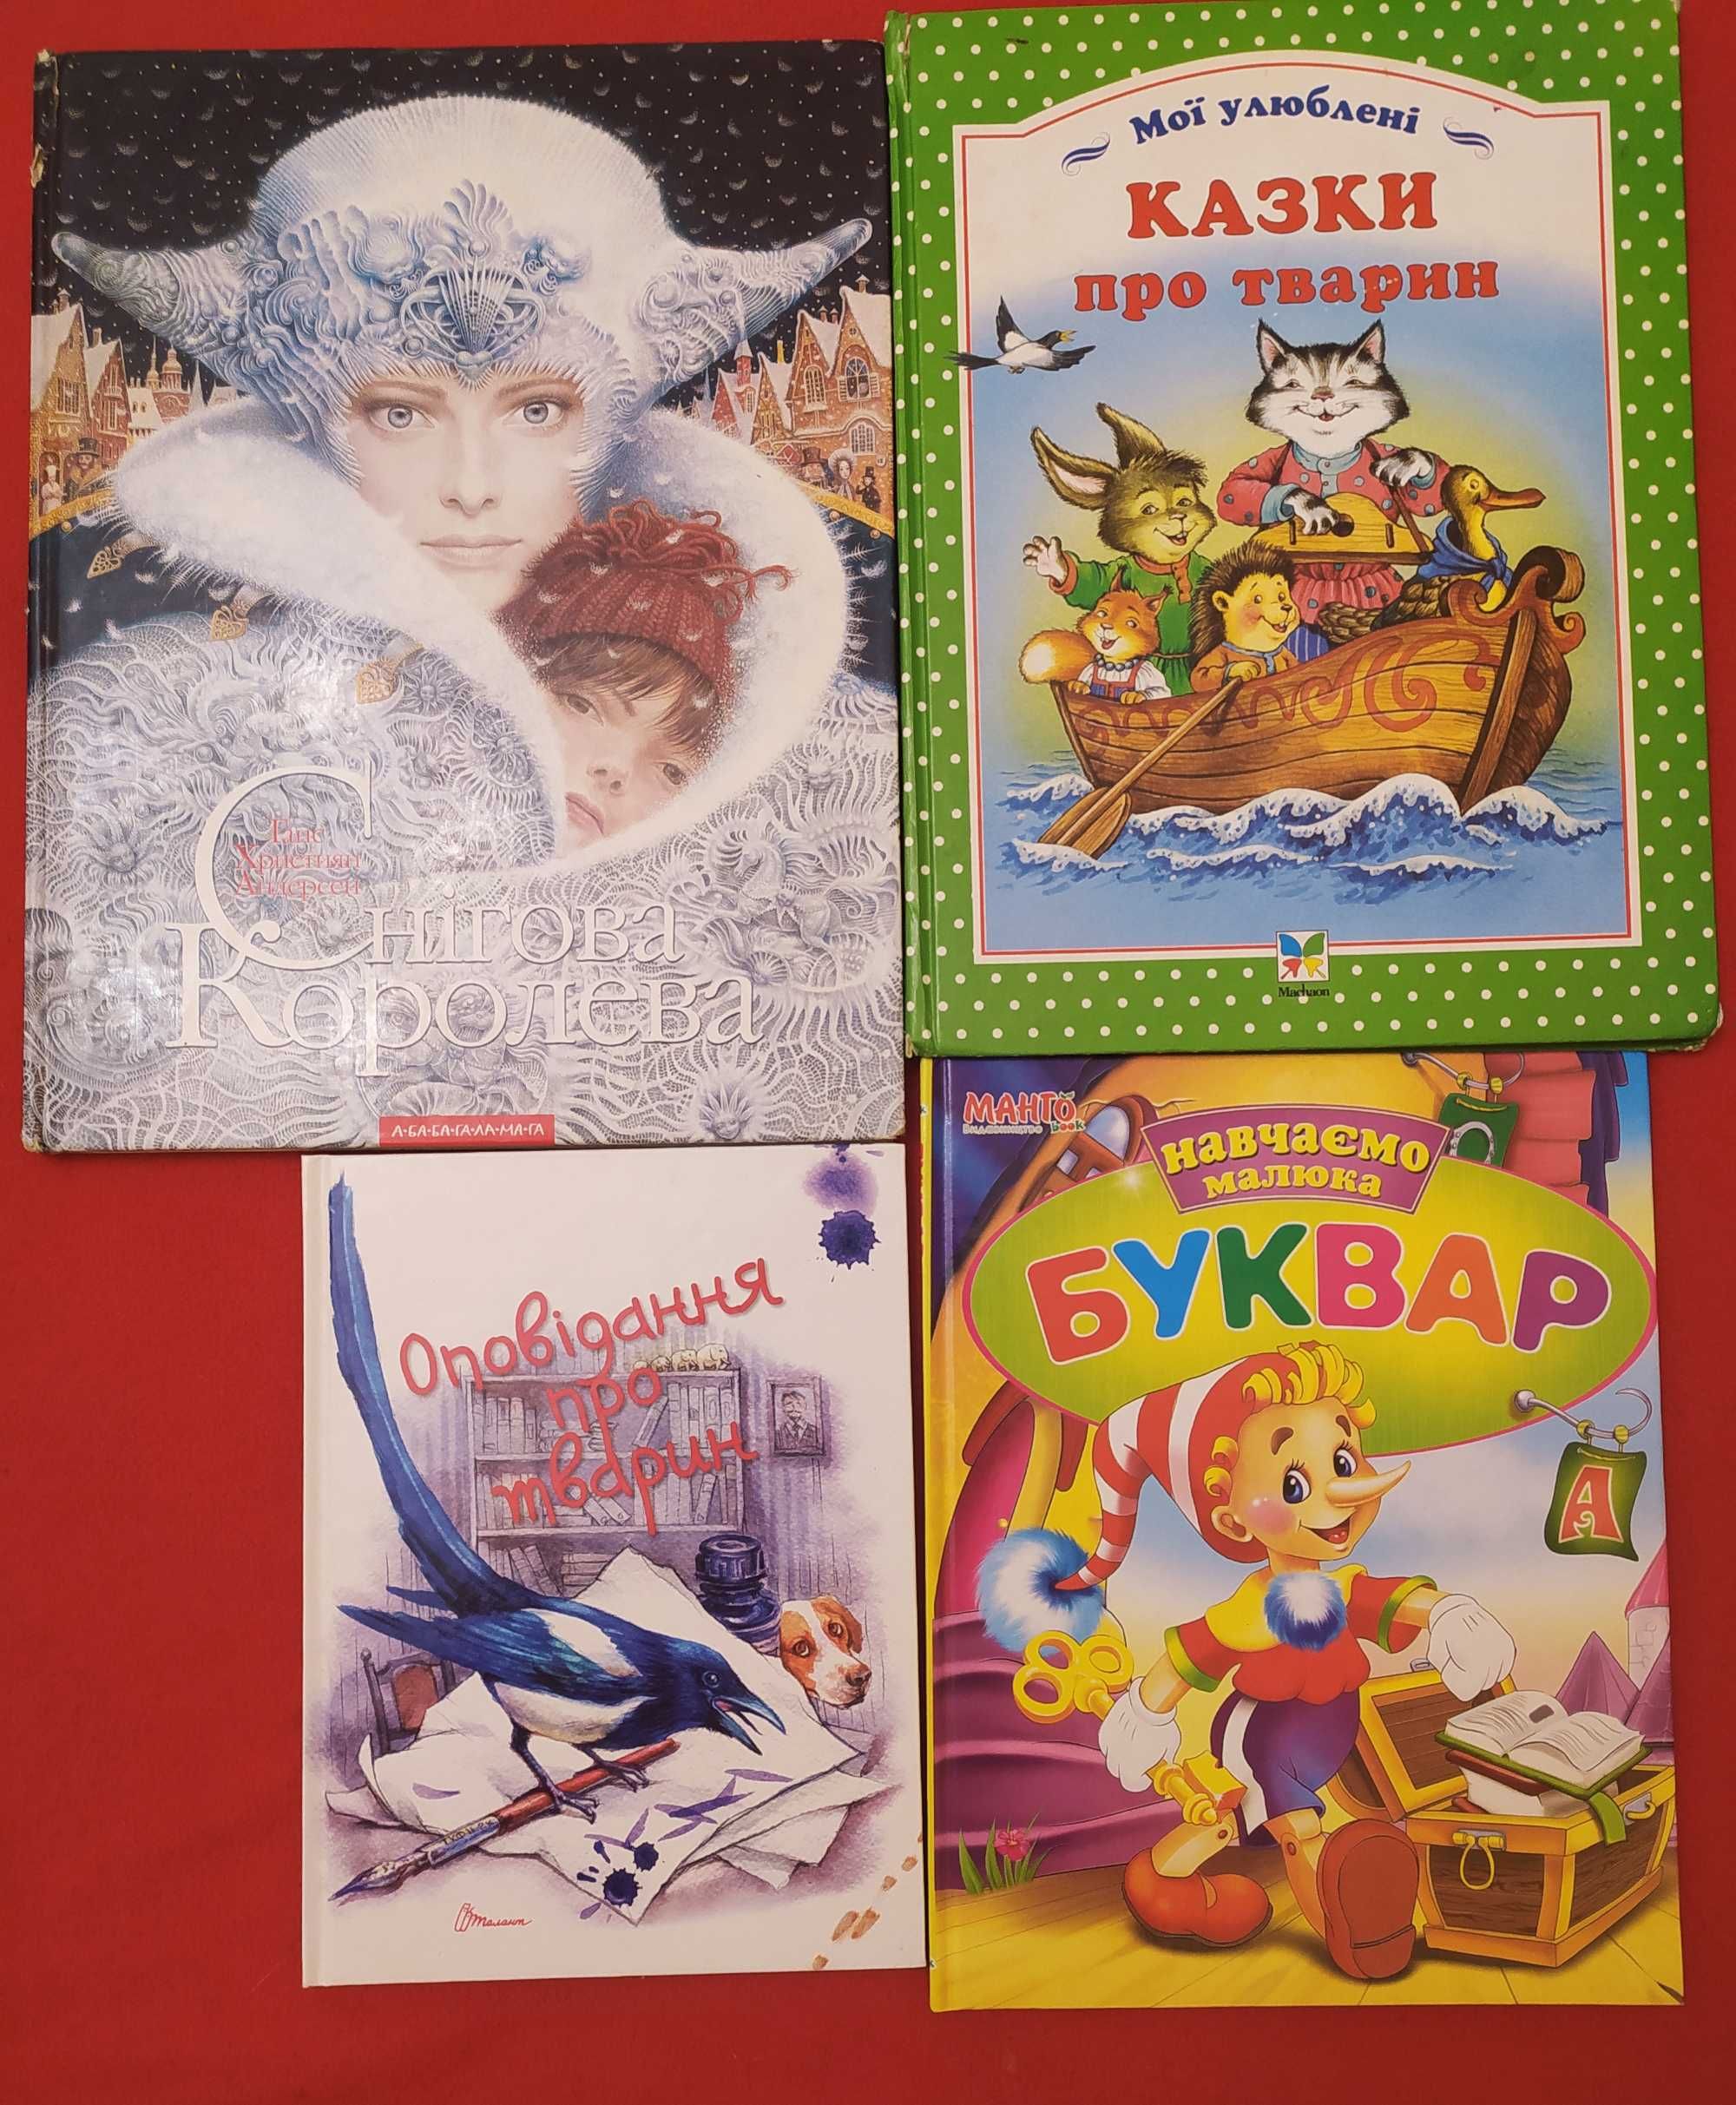 Казки про тварин та оповідання українською, Буквар, Снігова королева